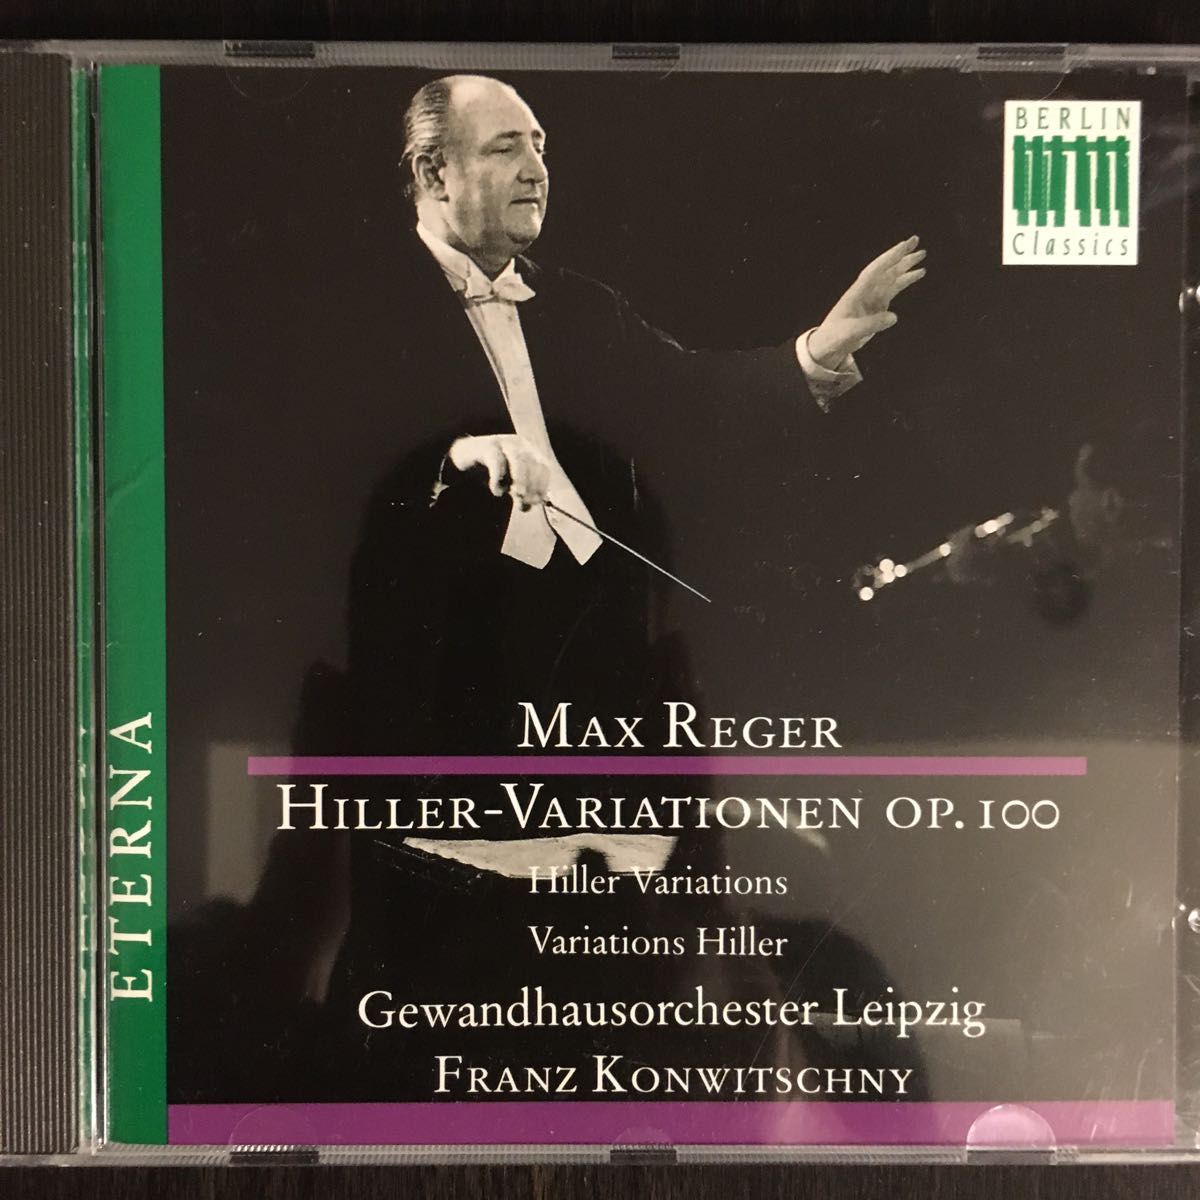 入手困難廃盤 コンヴィチュニー指揮ゲヴァントハウス管 レーガー J.A.ヒラーの主題による変奏曲とフーガ